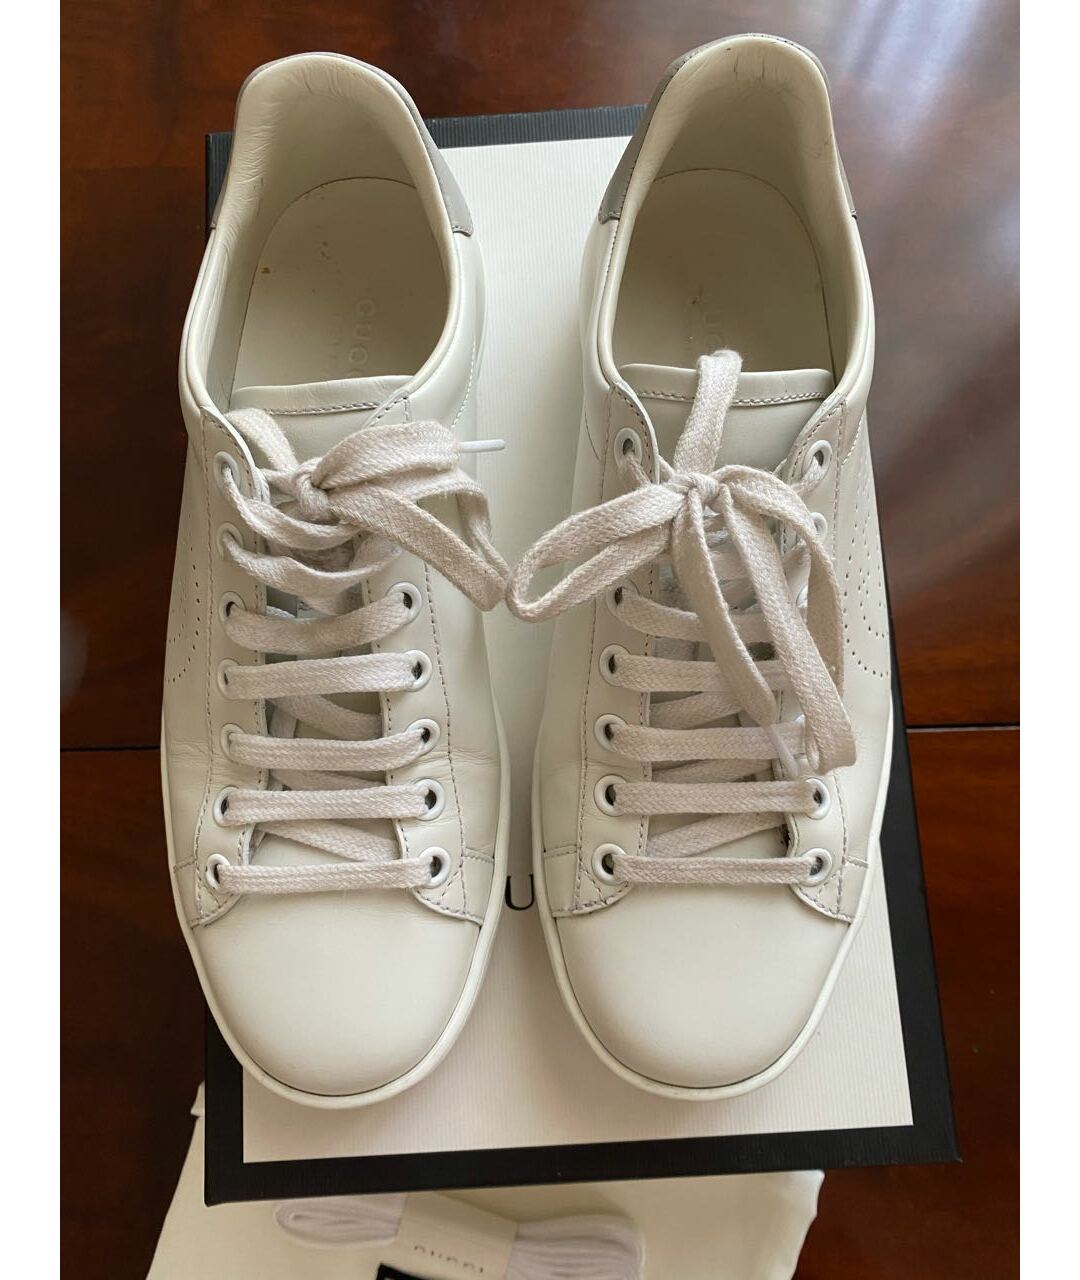 GUCCI Белые кожаные кроссовки, фото 2